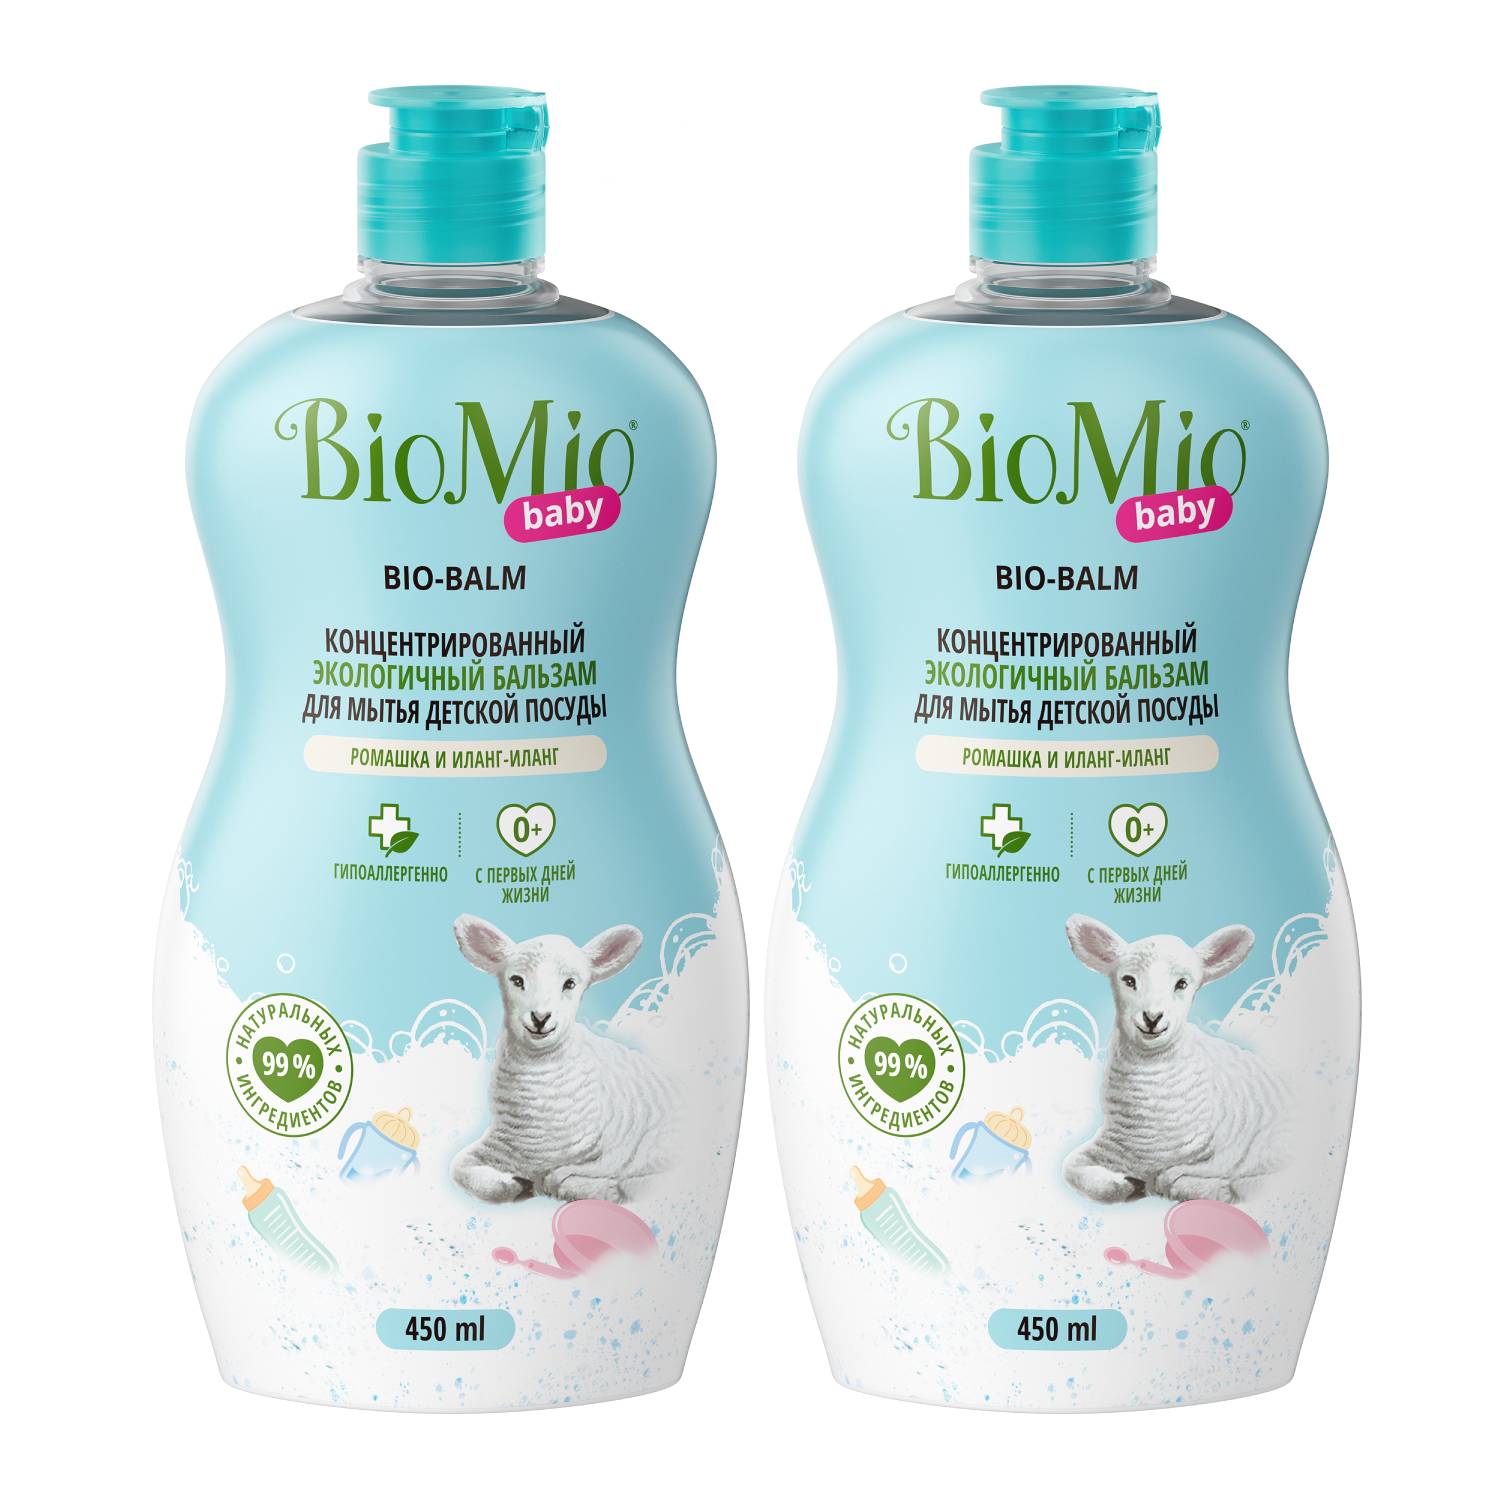 BioMio Экологичный бальзам для мытья детской посуды «Ромашка и иланг-иланг» 0+, 2 х 450 мл (BioMio, Посуда) средство для мытья biomio baby bio balm для детской посуды 450 мл